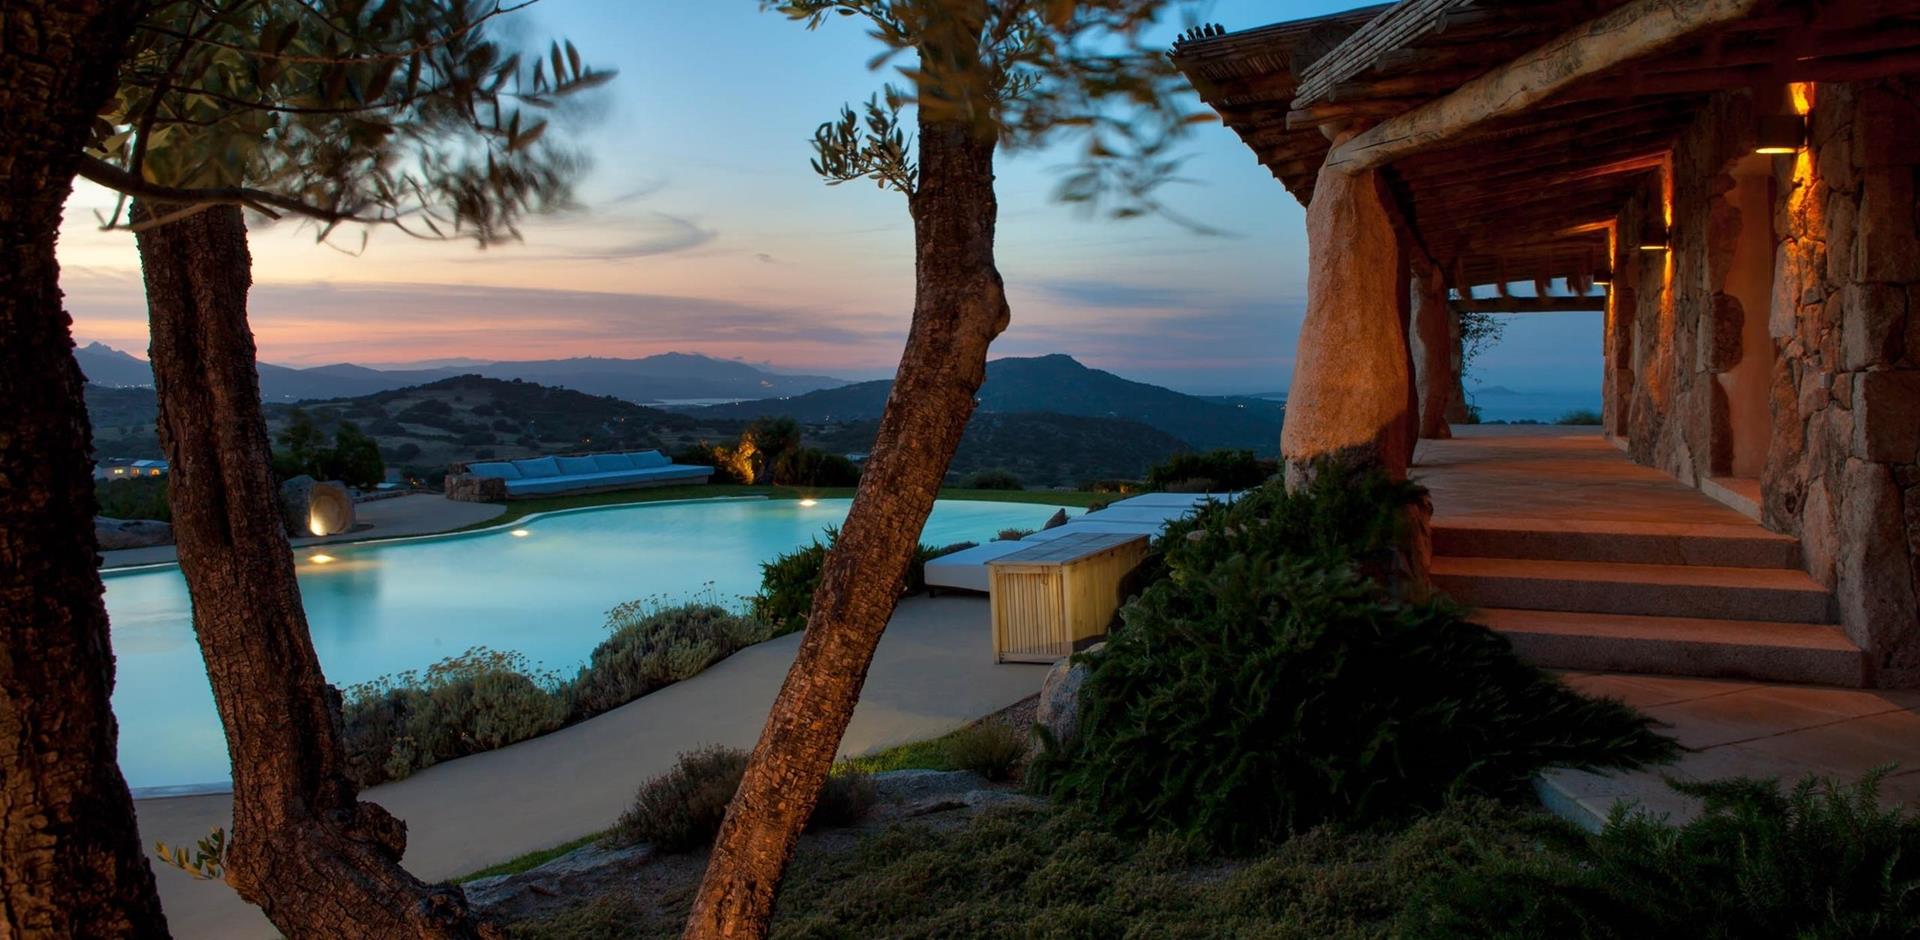 Pool Area, Villa Tafoni, Sardinia